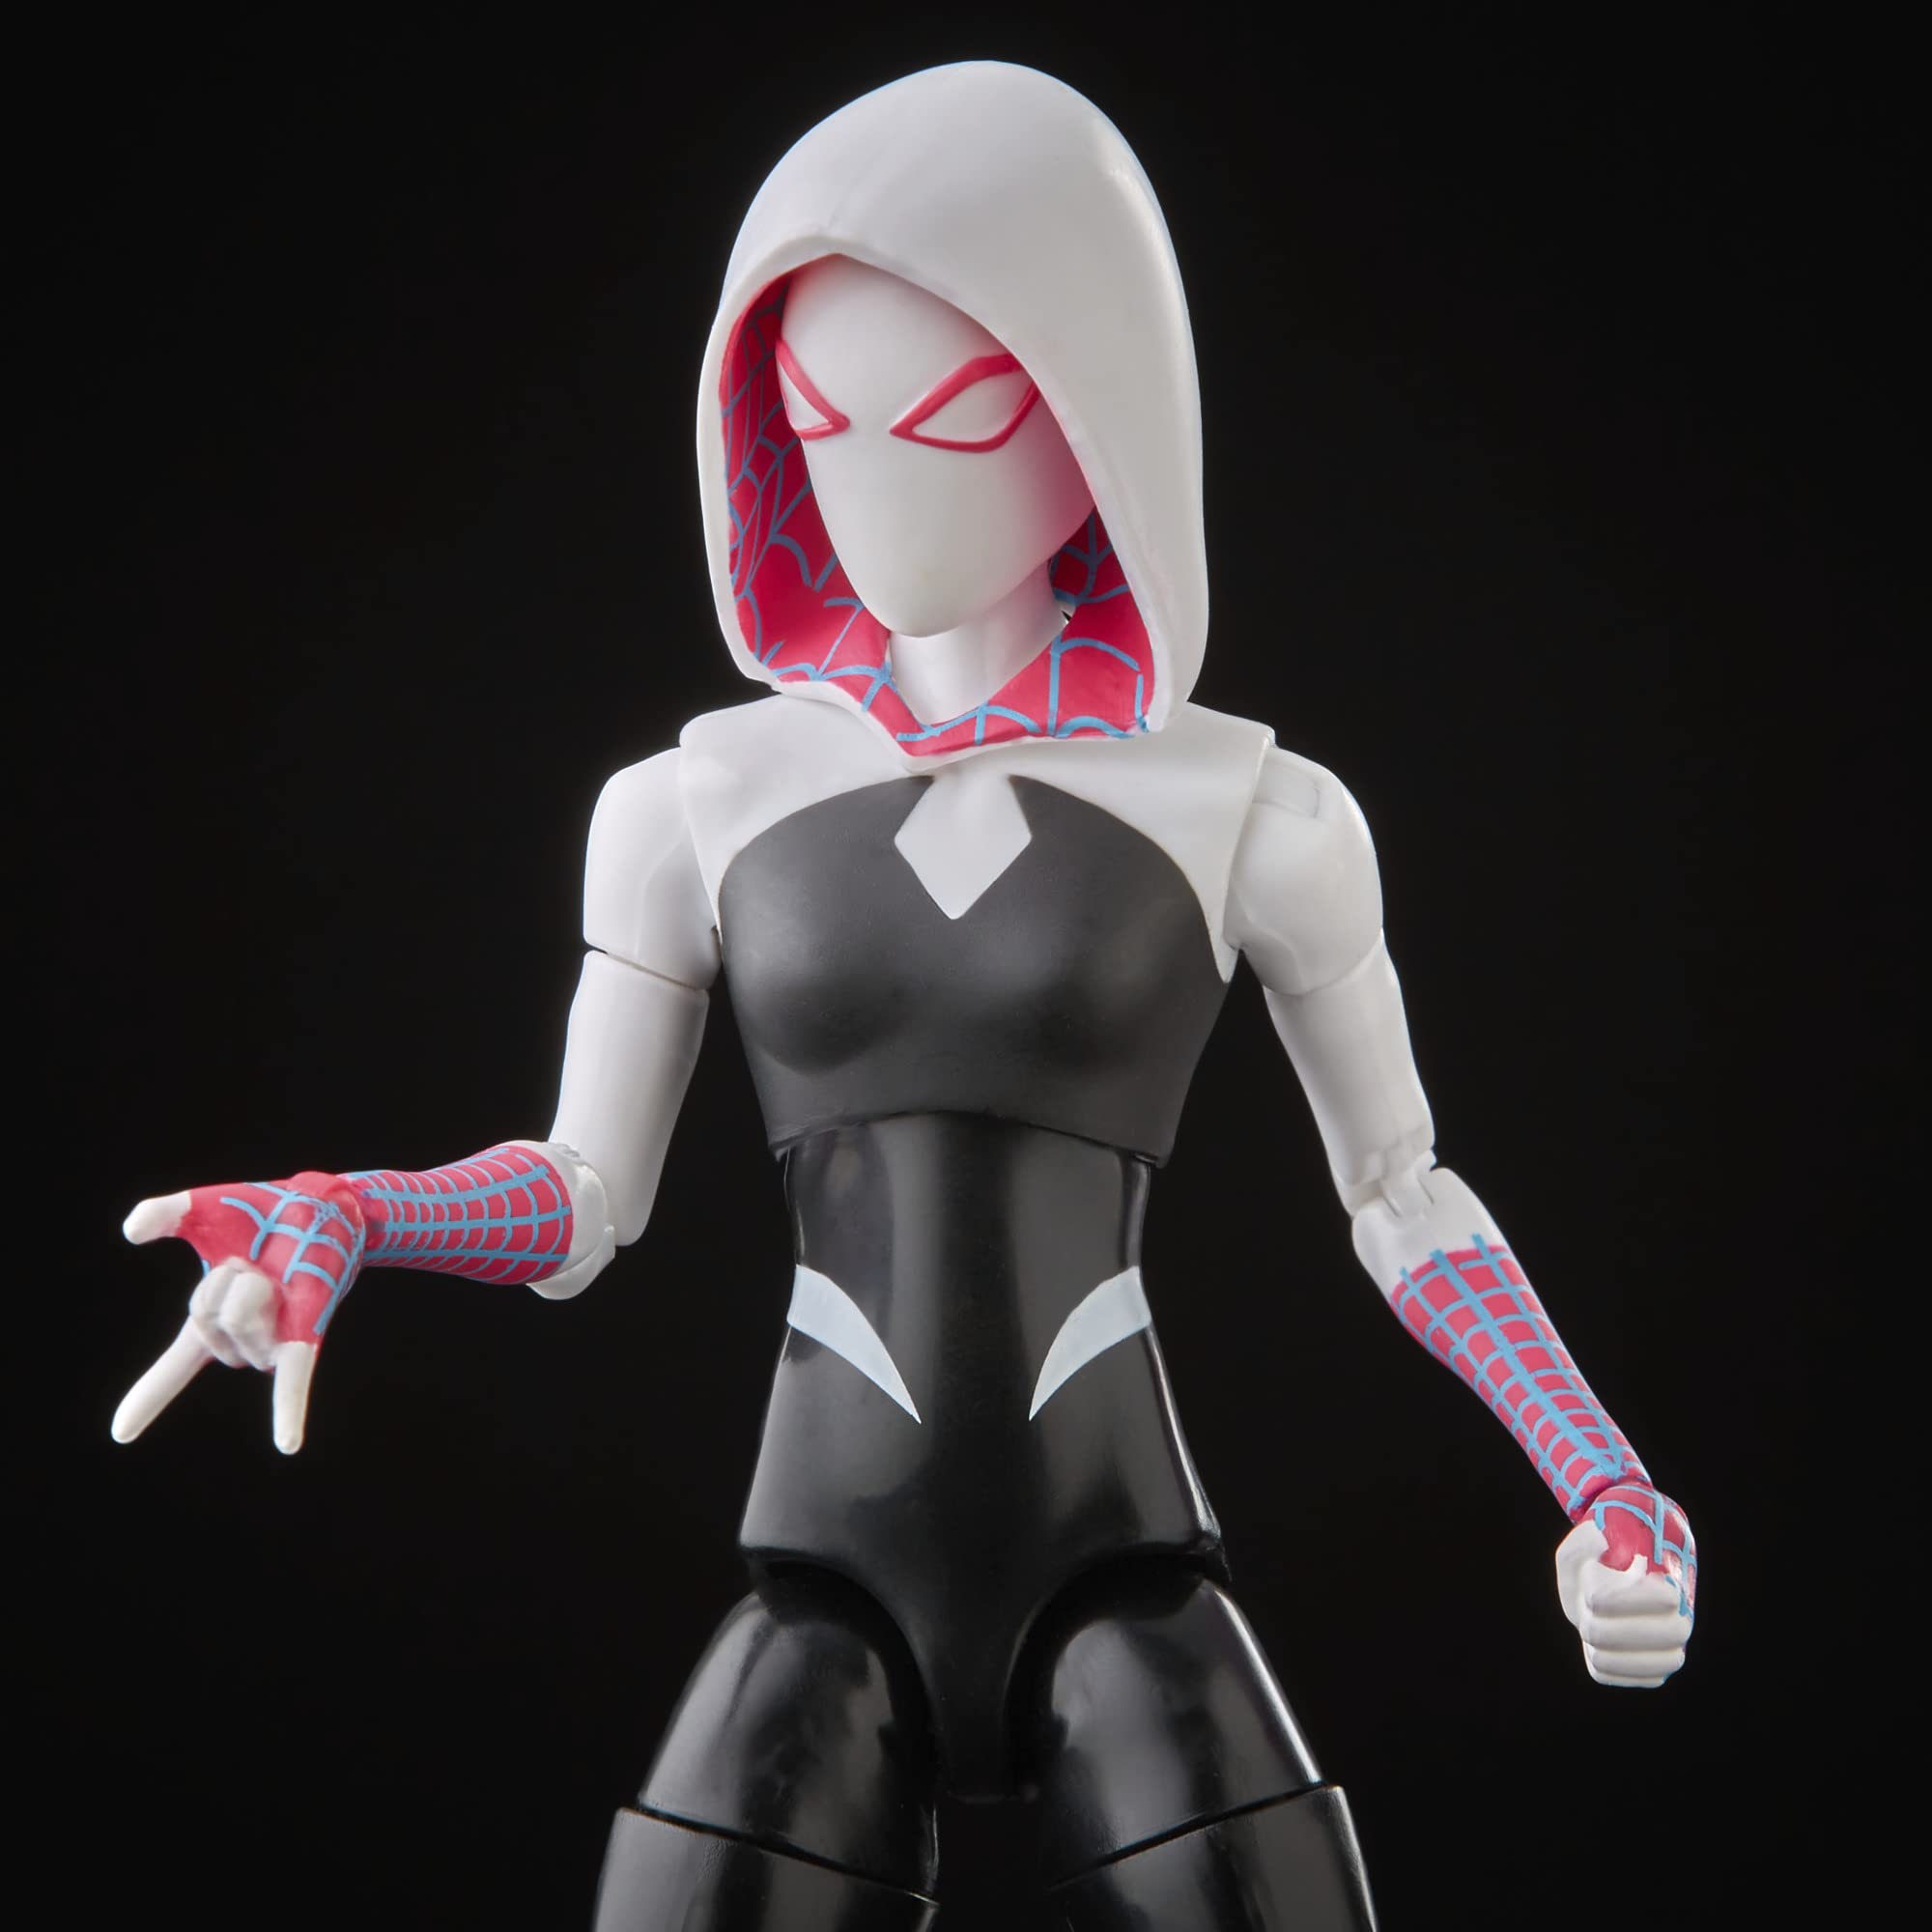 Spider-Man Marvel Legends Series Across The Spider-Verse Spider-Gwen 6-inch Action Figure Toy, 4 Accessories